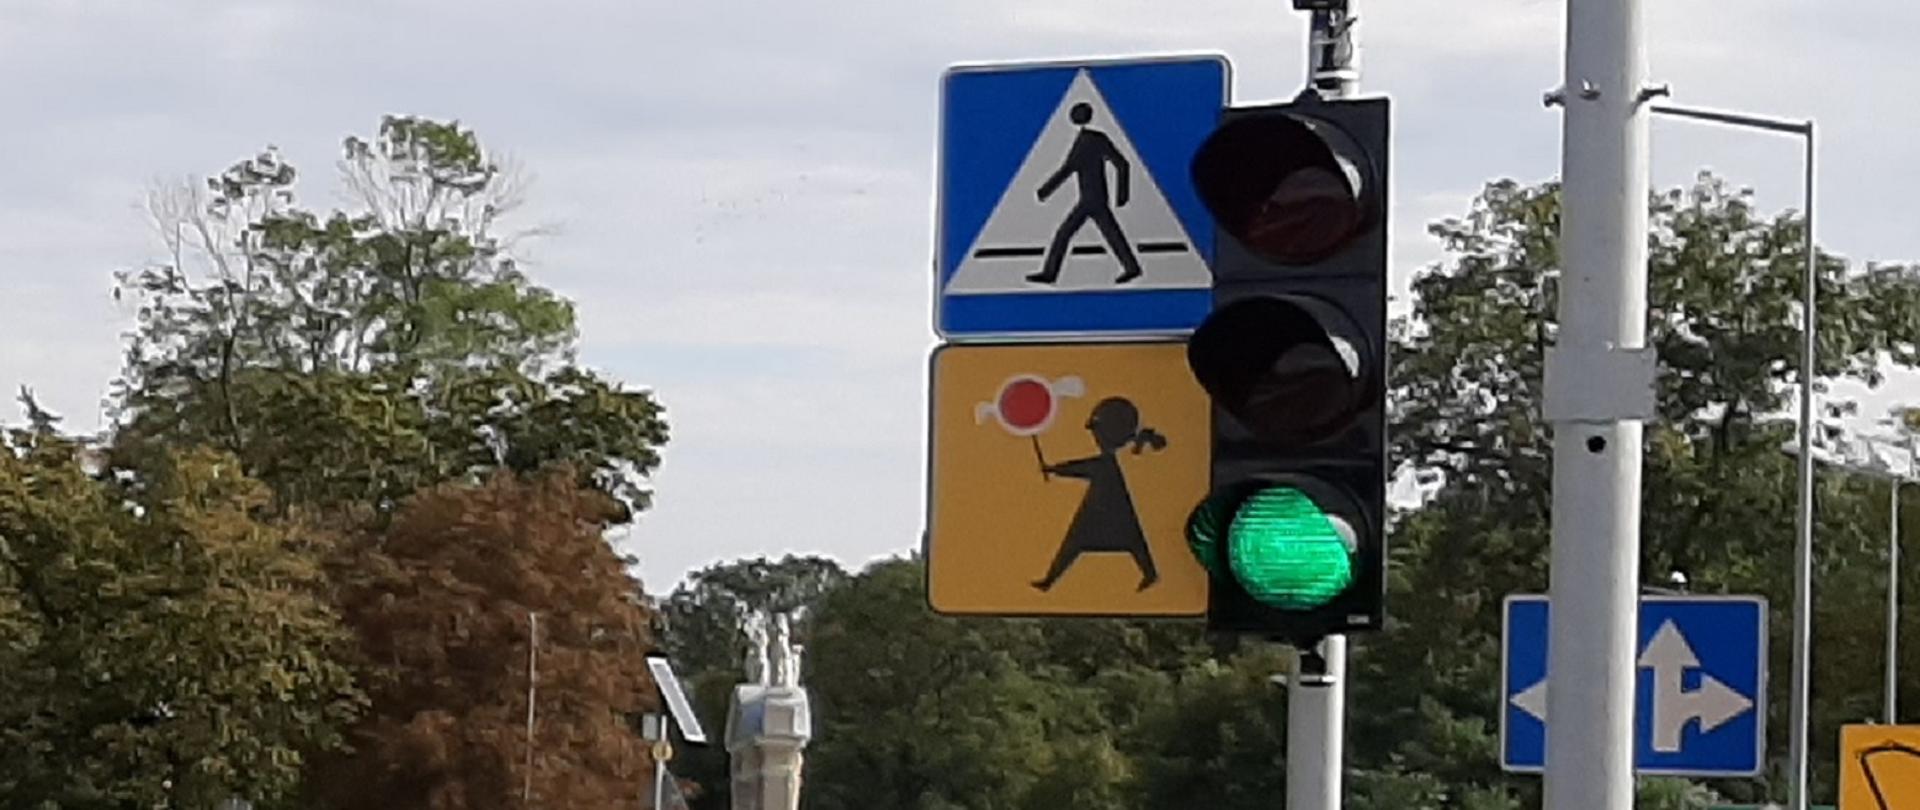 Z prawej strony widoczny sygnalizator z zielonym światłem. Obok na tej samej wysokości znak przedstawiający przejście dla pieszych. w oddali widoczne korony drzew.